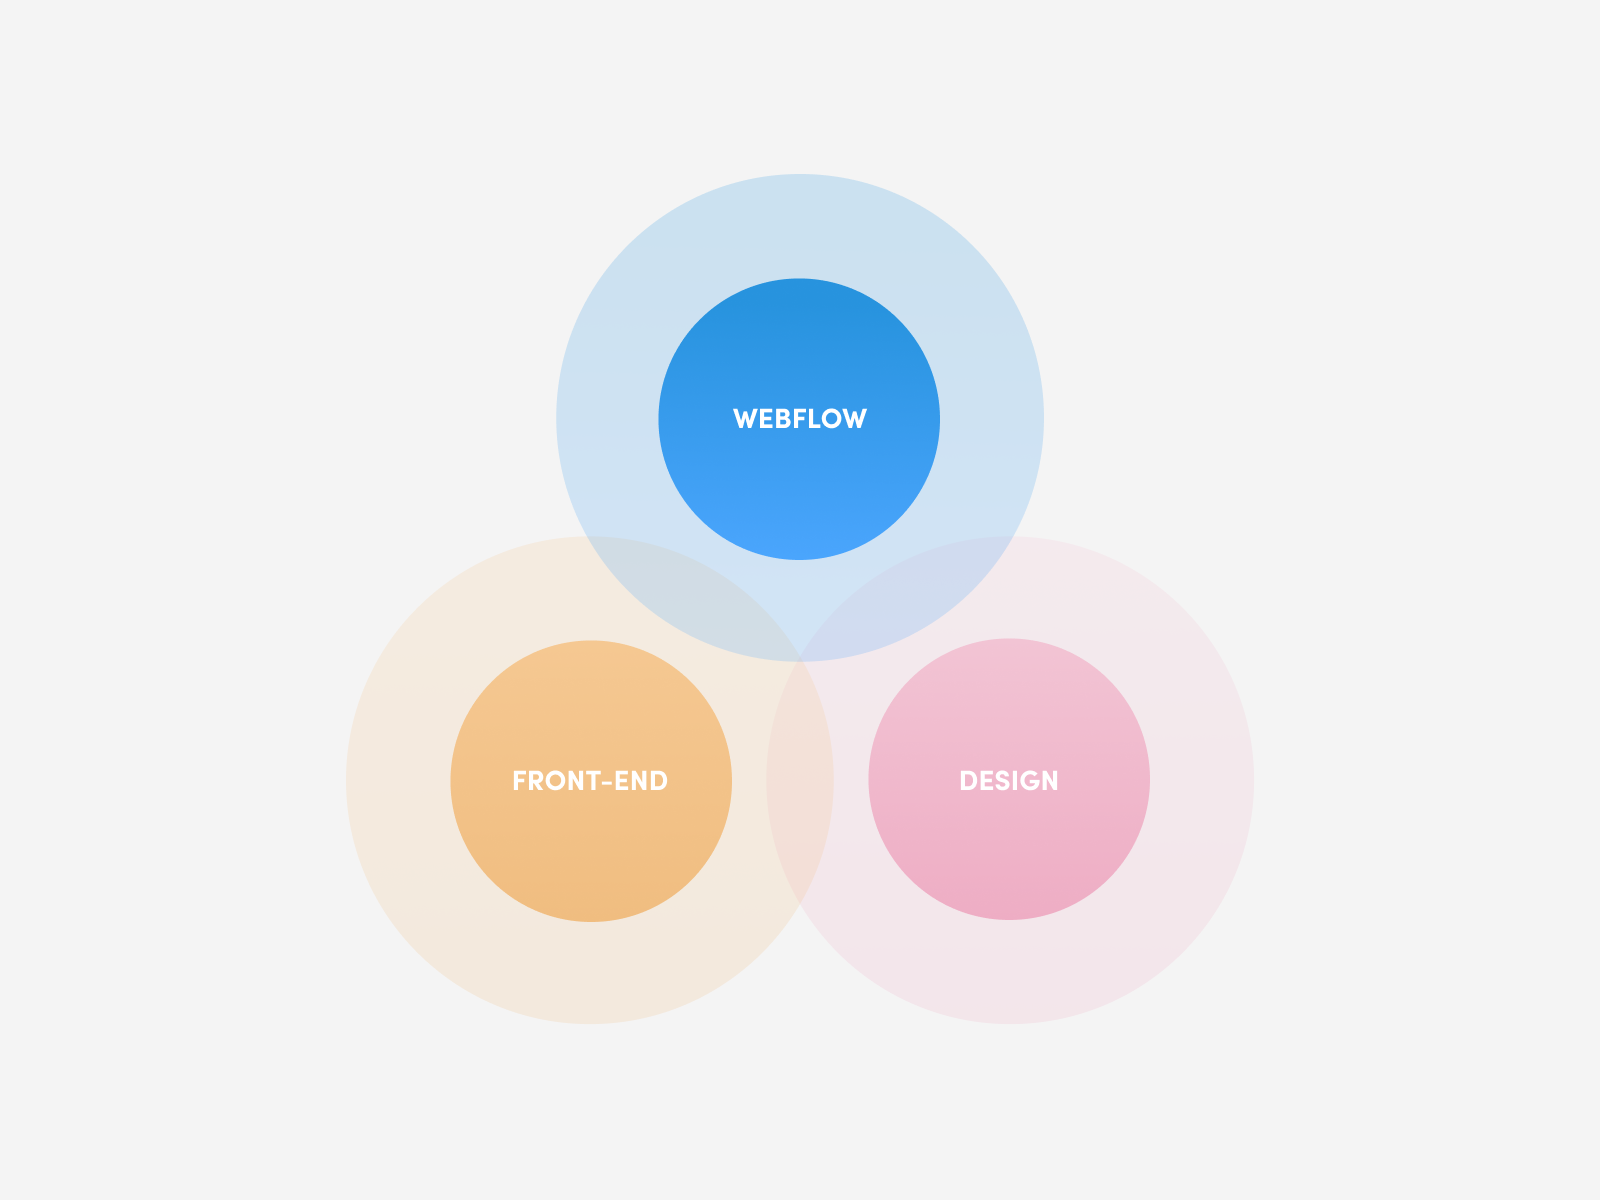 Webflow is a platform primarily designed for proper web design and development